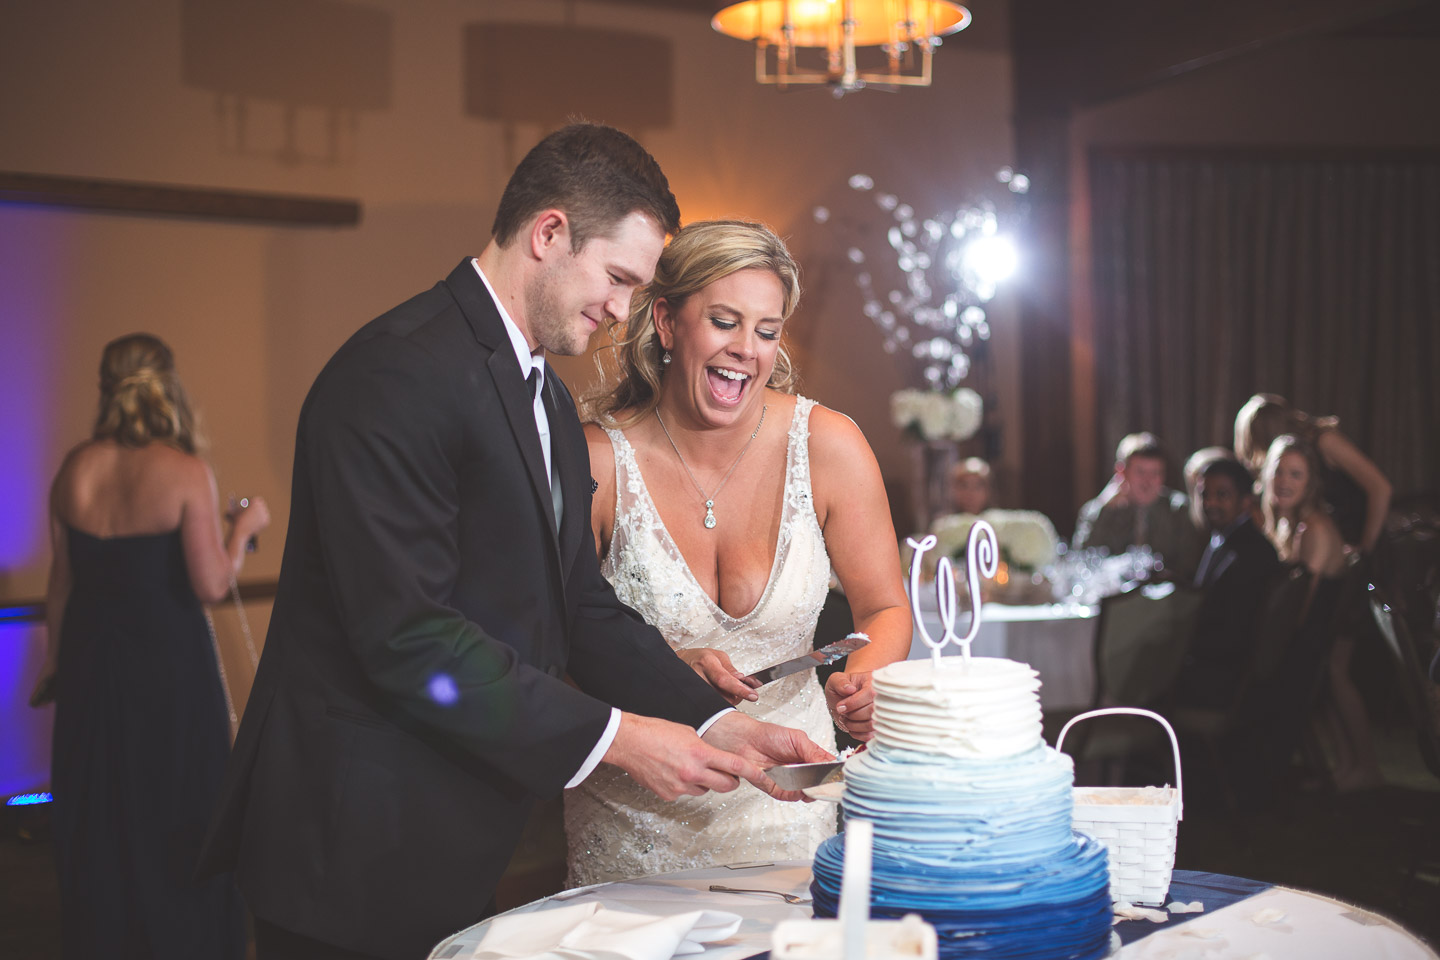 West-Bloomfield-Wedding-Michigan-Bay-Pointe-Golf-Club-Reception-Bride-Groom-Cut-Cake